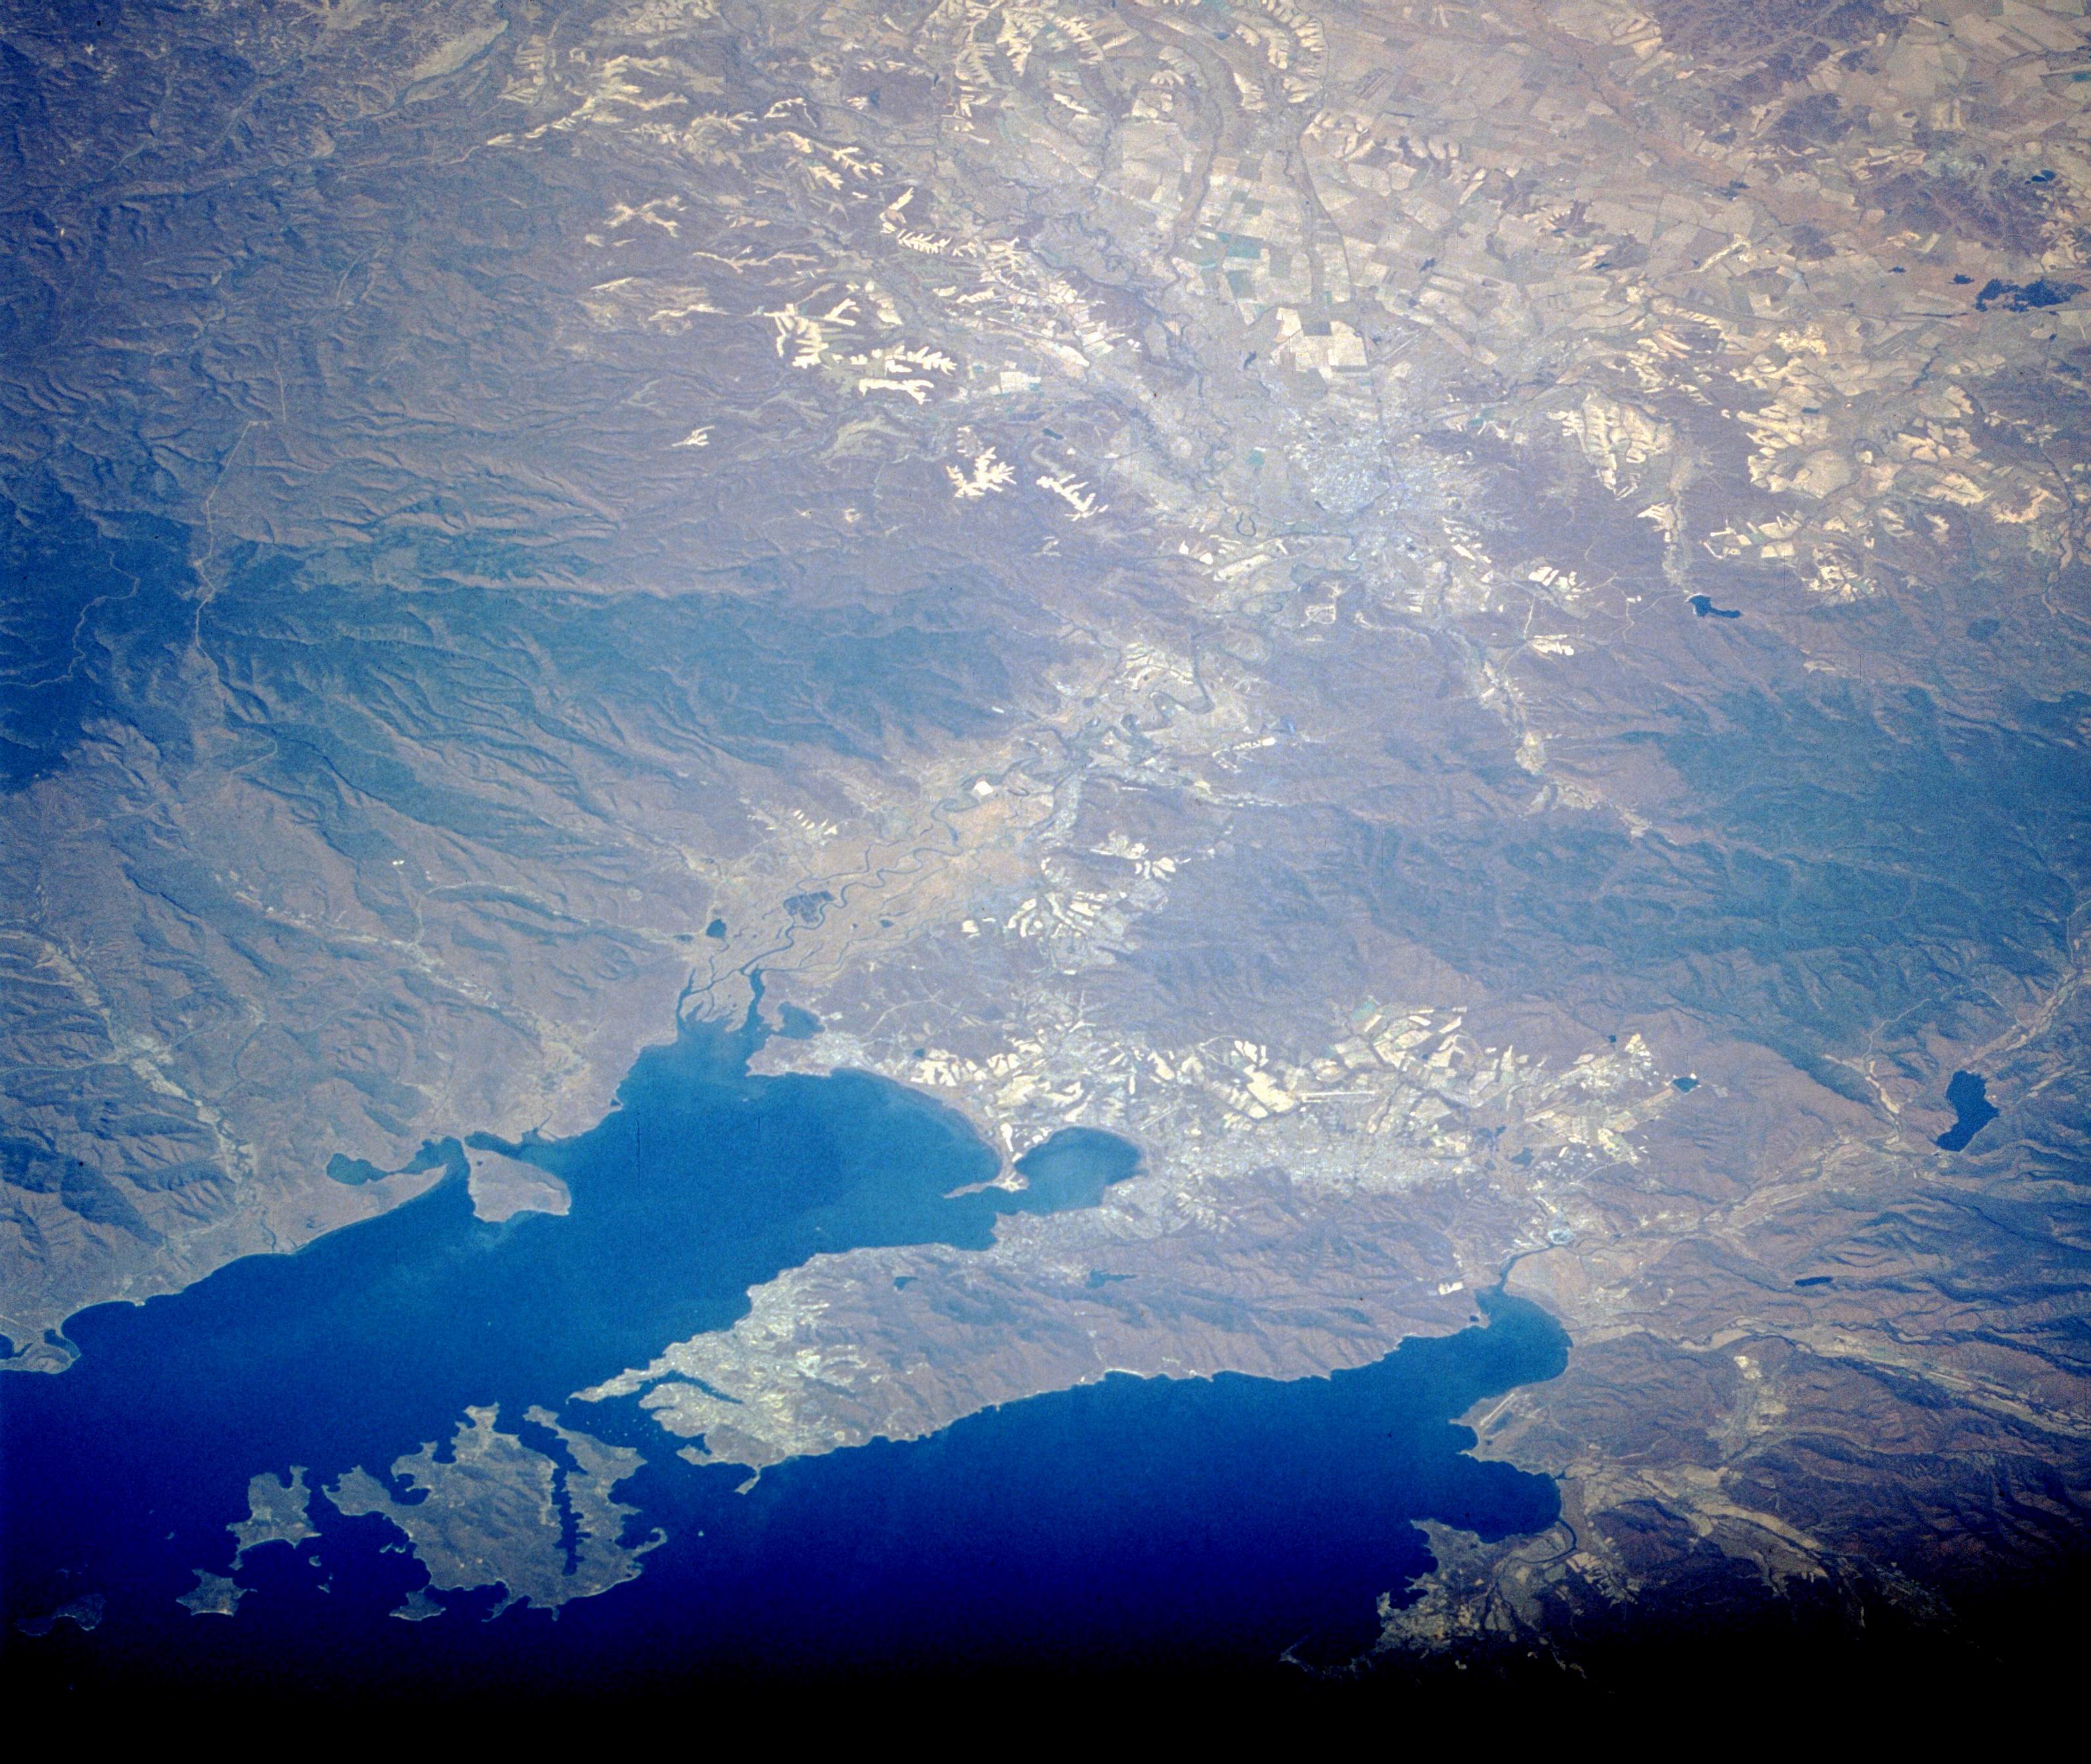 Владивосток - фото из космоса